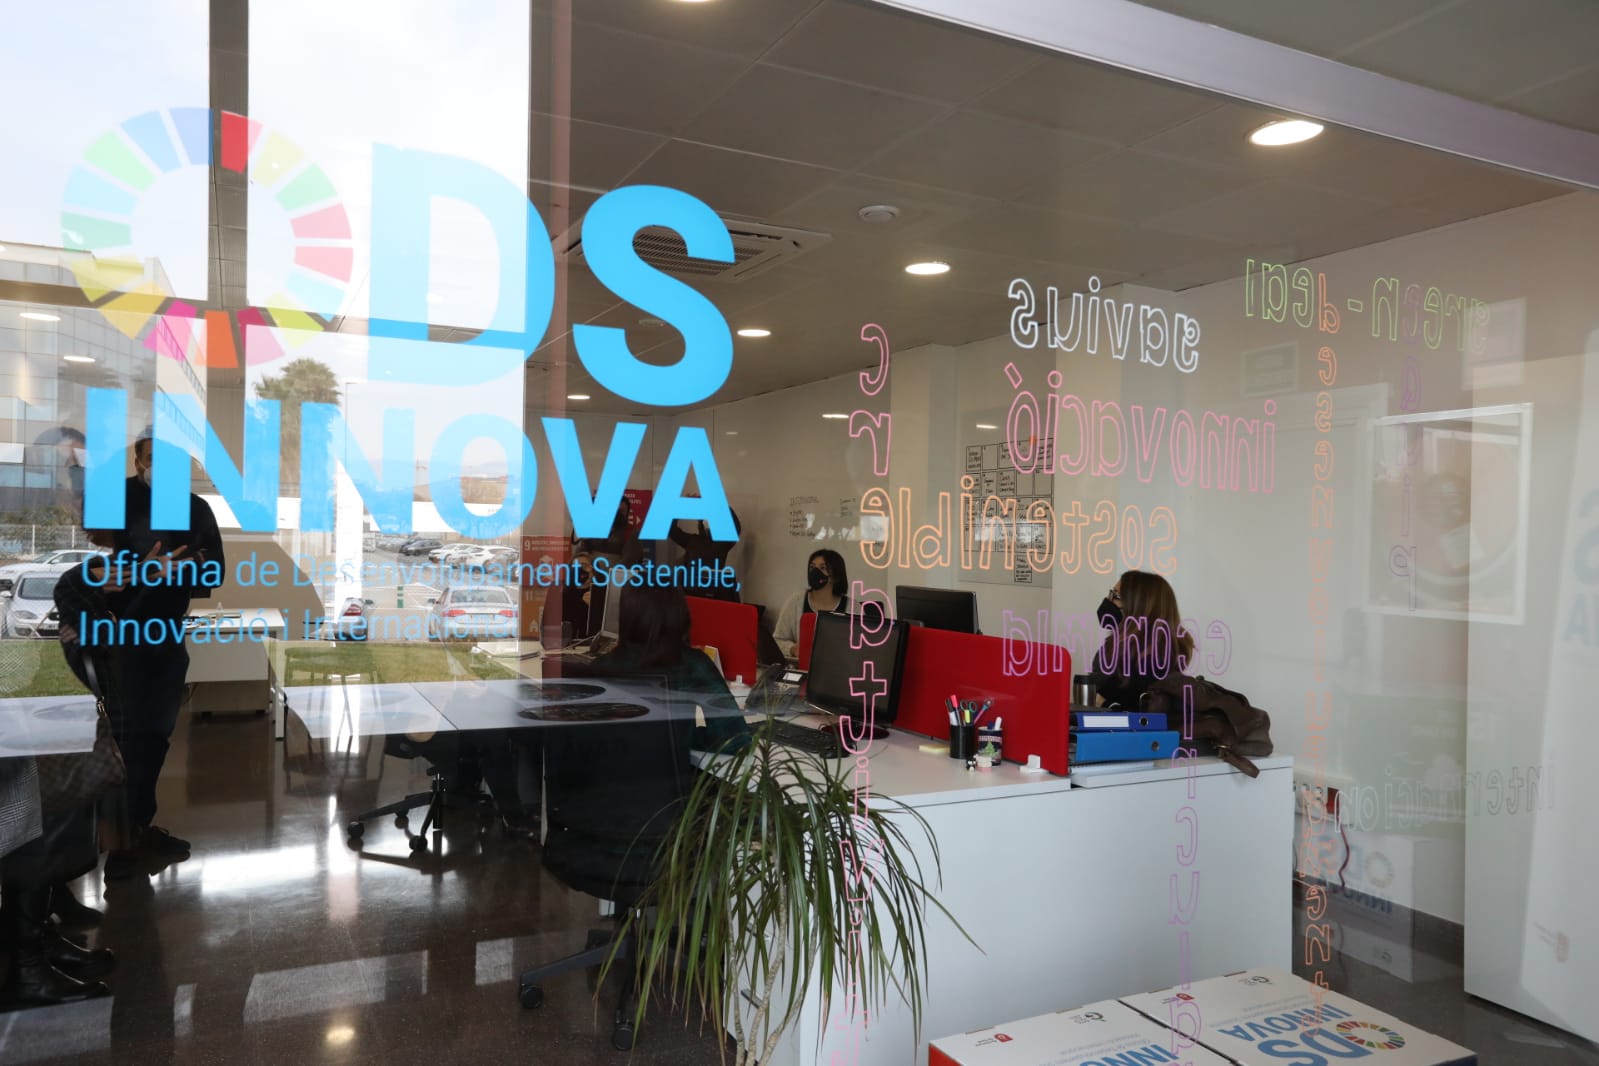 Oficina ODS Innova, el instrumento para consolidar Gavà como referente de sostenibilidad a través de la innovación